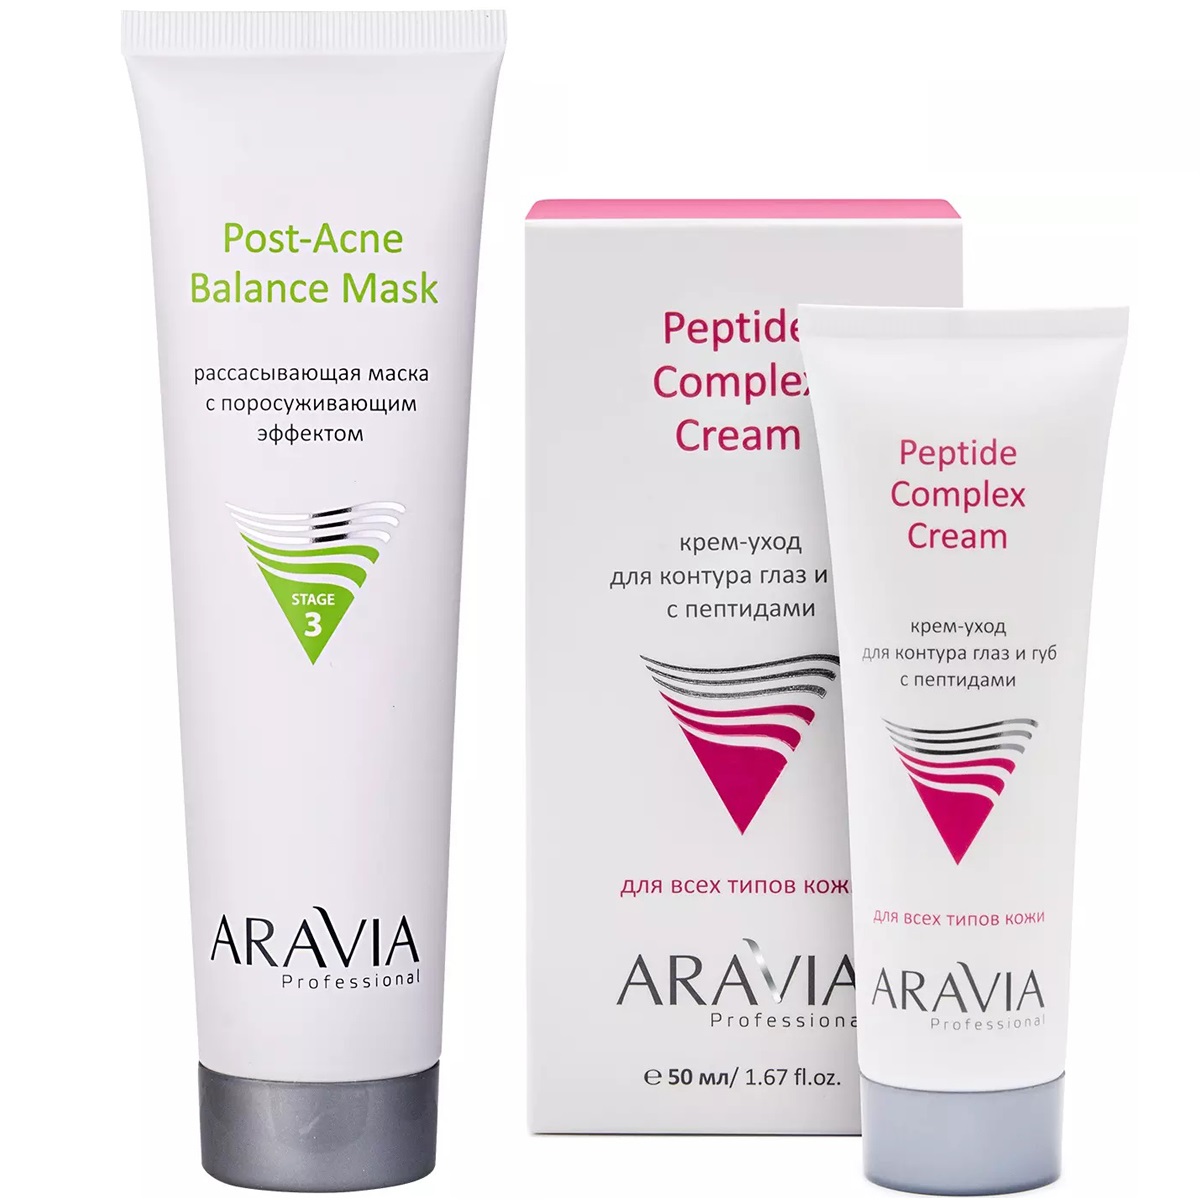 Aravia Professional Набор для ухода за кожей: крем-уход для губ и век, 50 мл + маска, 100 мл (Aravia Professional, Уход за лицом) крем для лица shine is крем концентрат с противовоспалительным действием для проблемной кожи acne control cream